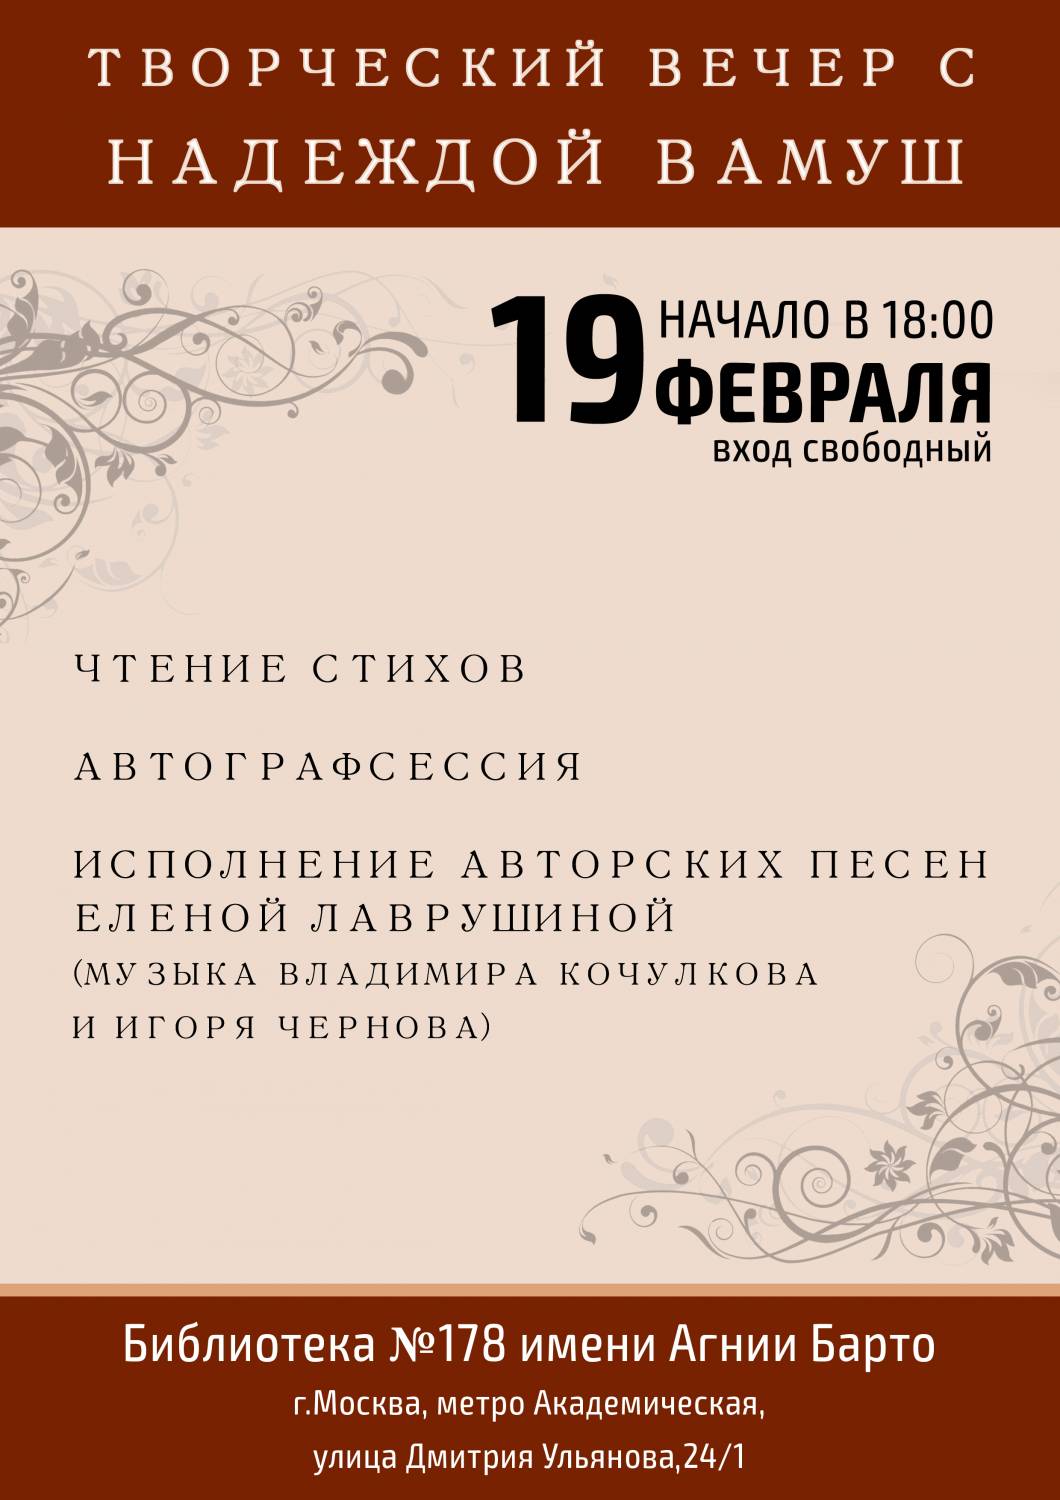 Творческий вечер Надежды Вамуш пройдет в Москве